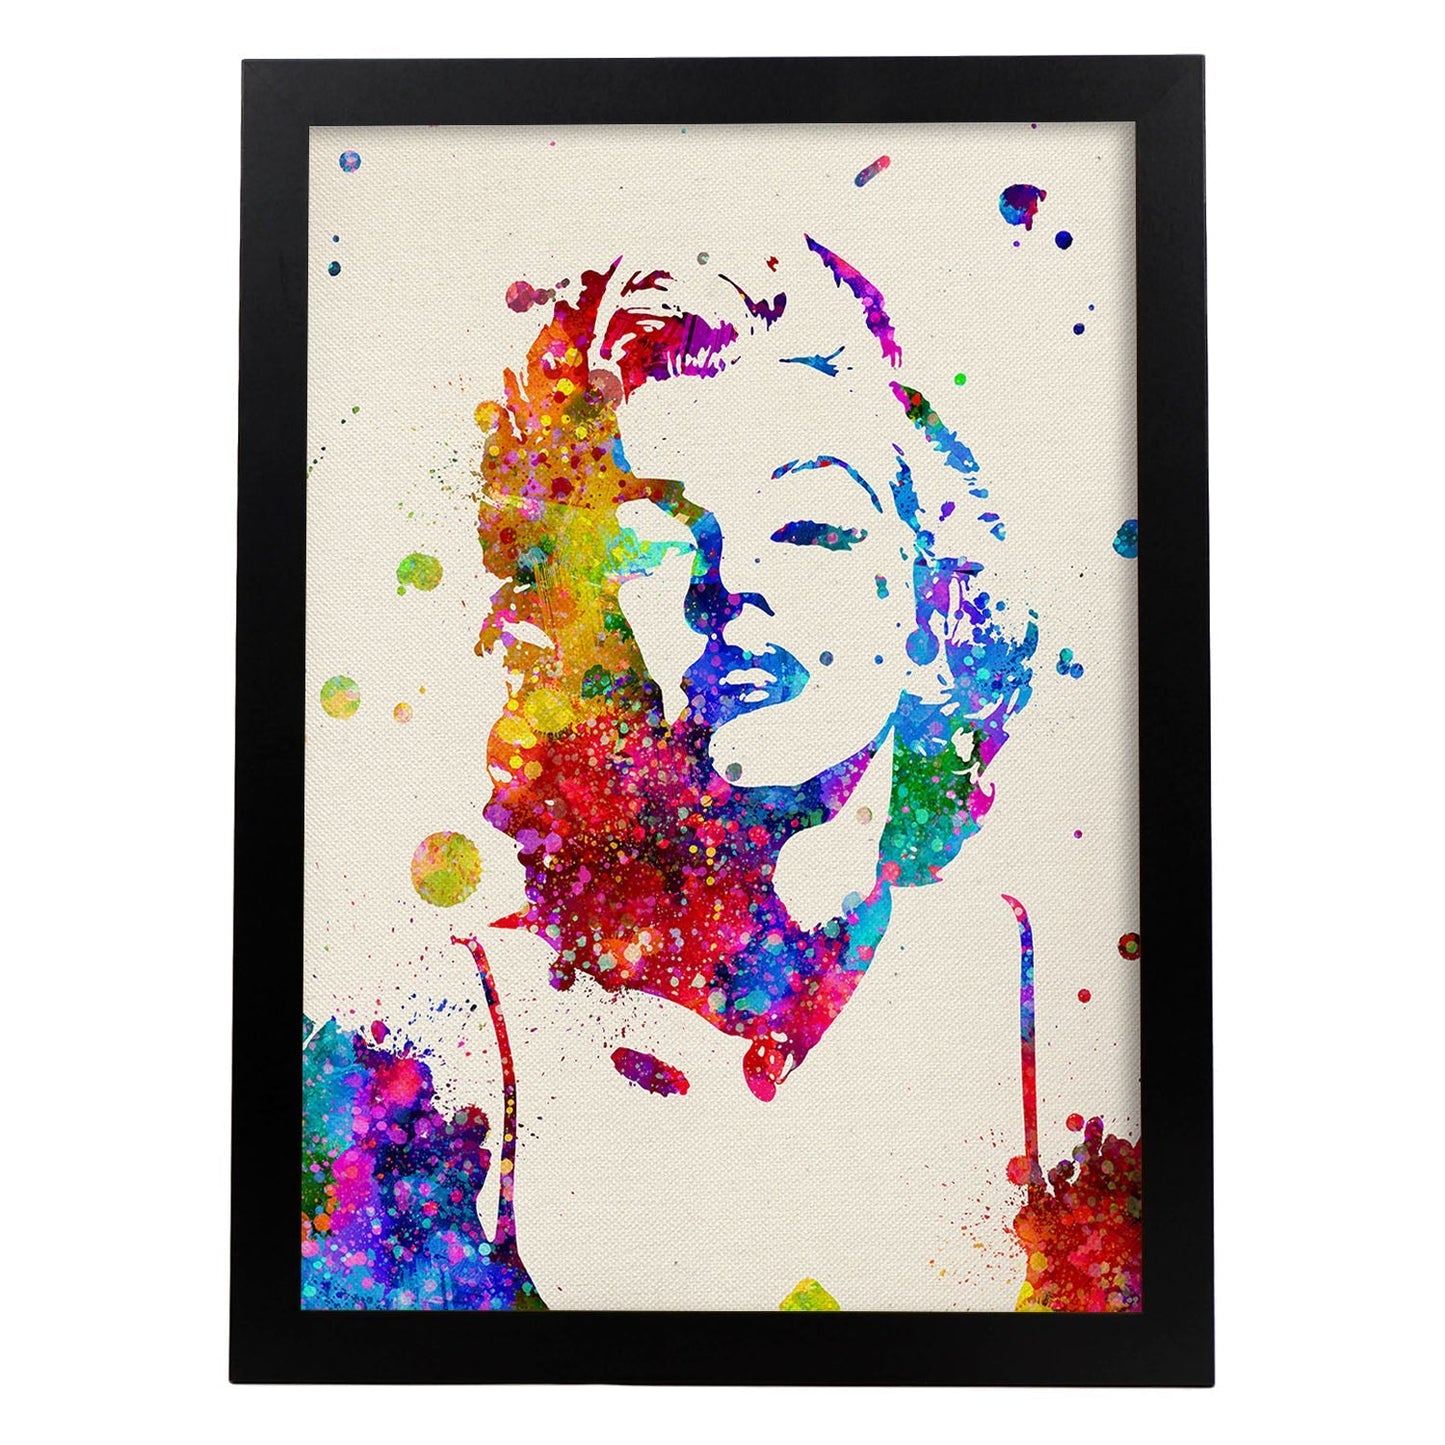 Poster imagen de Marilyn Monroe. Posters con diseño acuarela de famosos, actores, músicos-Artwork-Nacnic-A3-Marco Negro-Nacnic Estudio SL